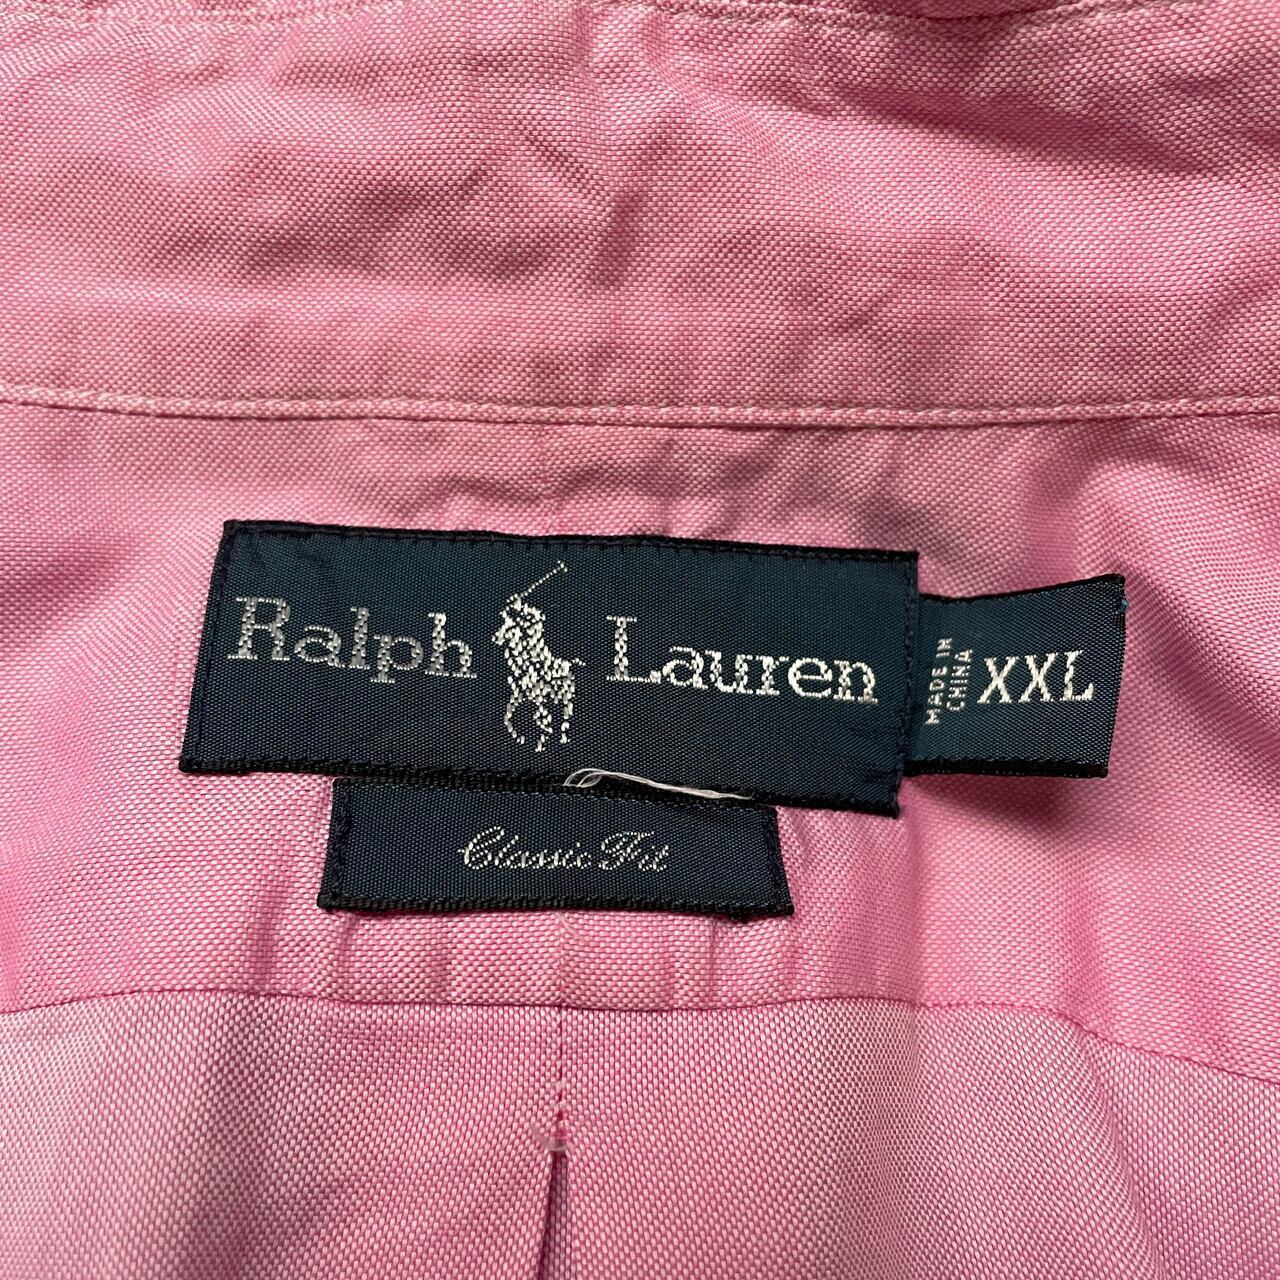 ラルフローレン ワンポイントロゴ刺繍長袖シャツ ピンク ビッグサイズ